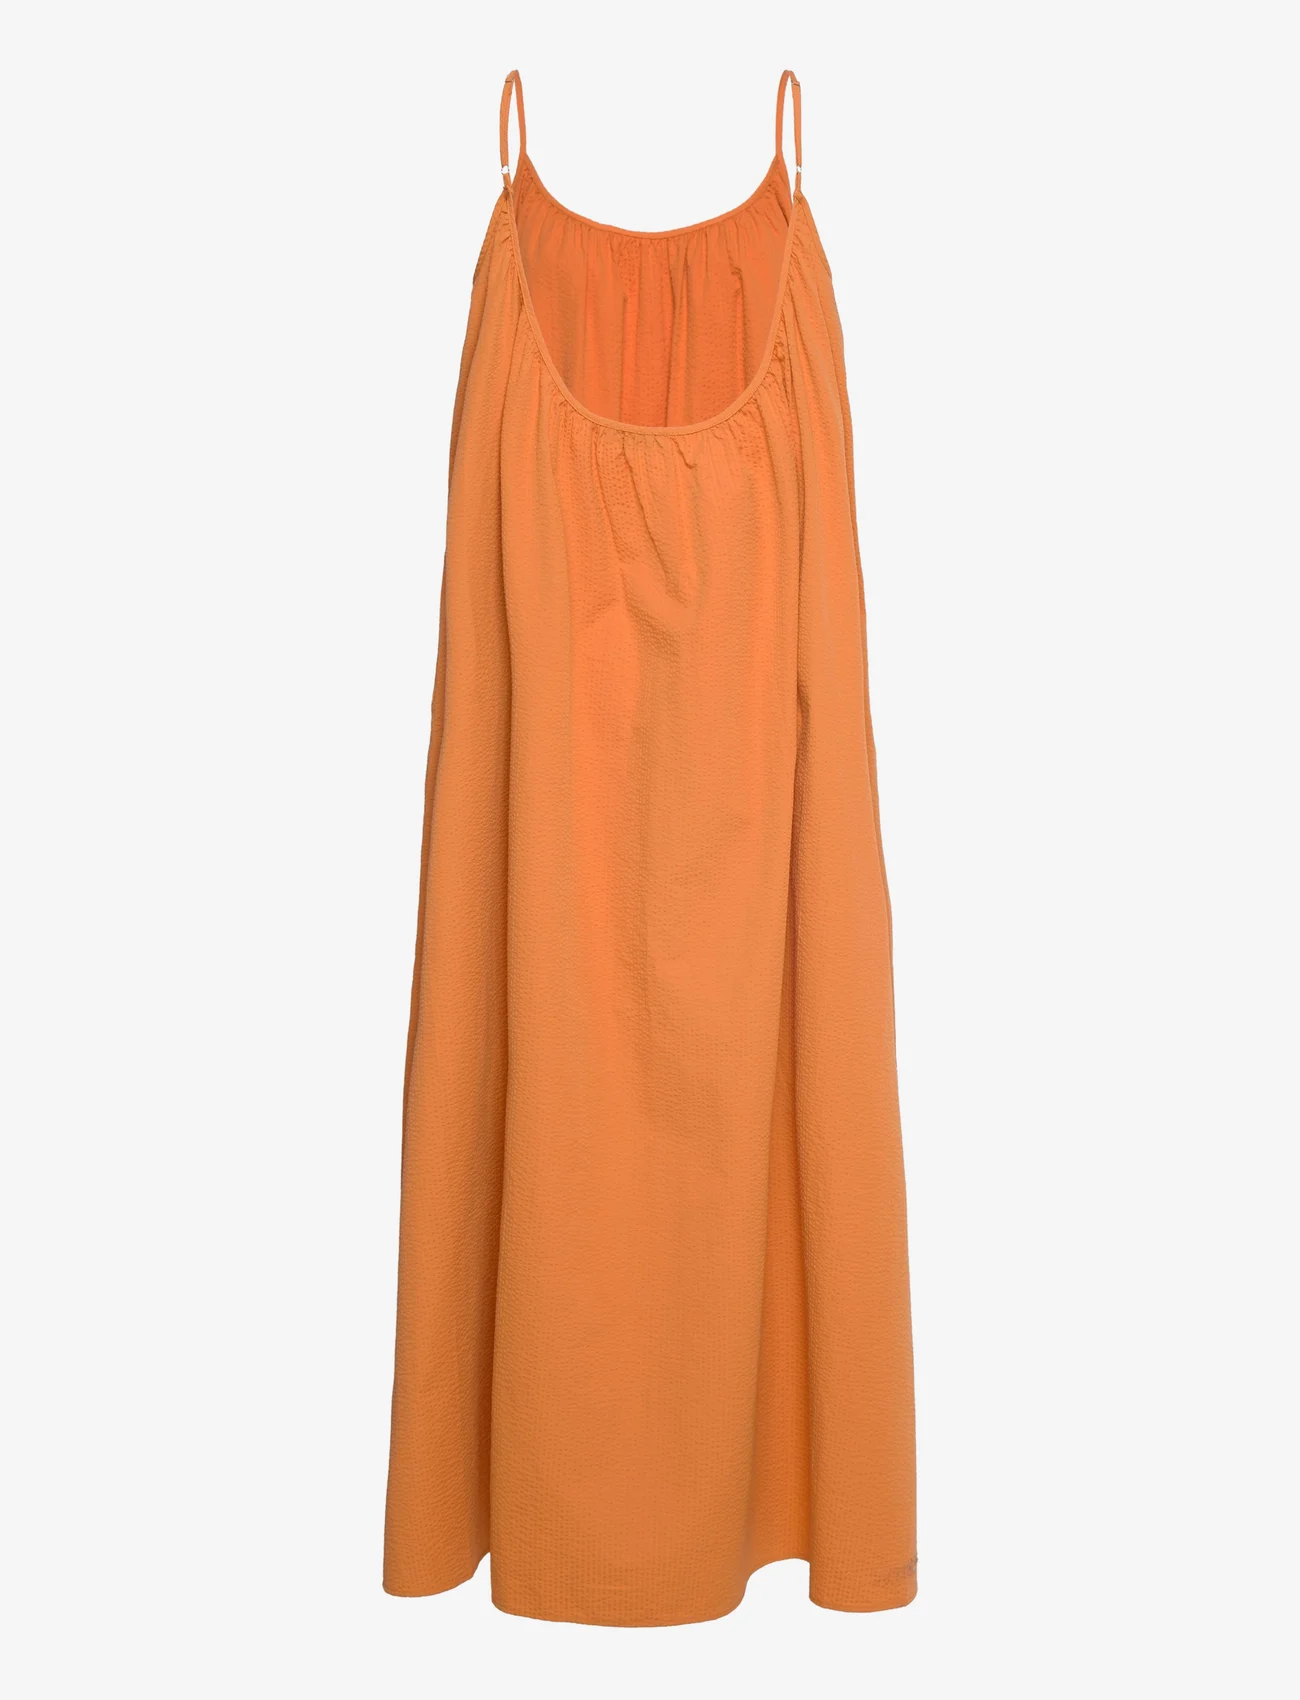 Stylein - MILO DRESS - maxi-jurken - orange - 1